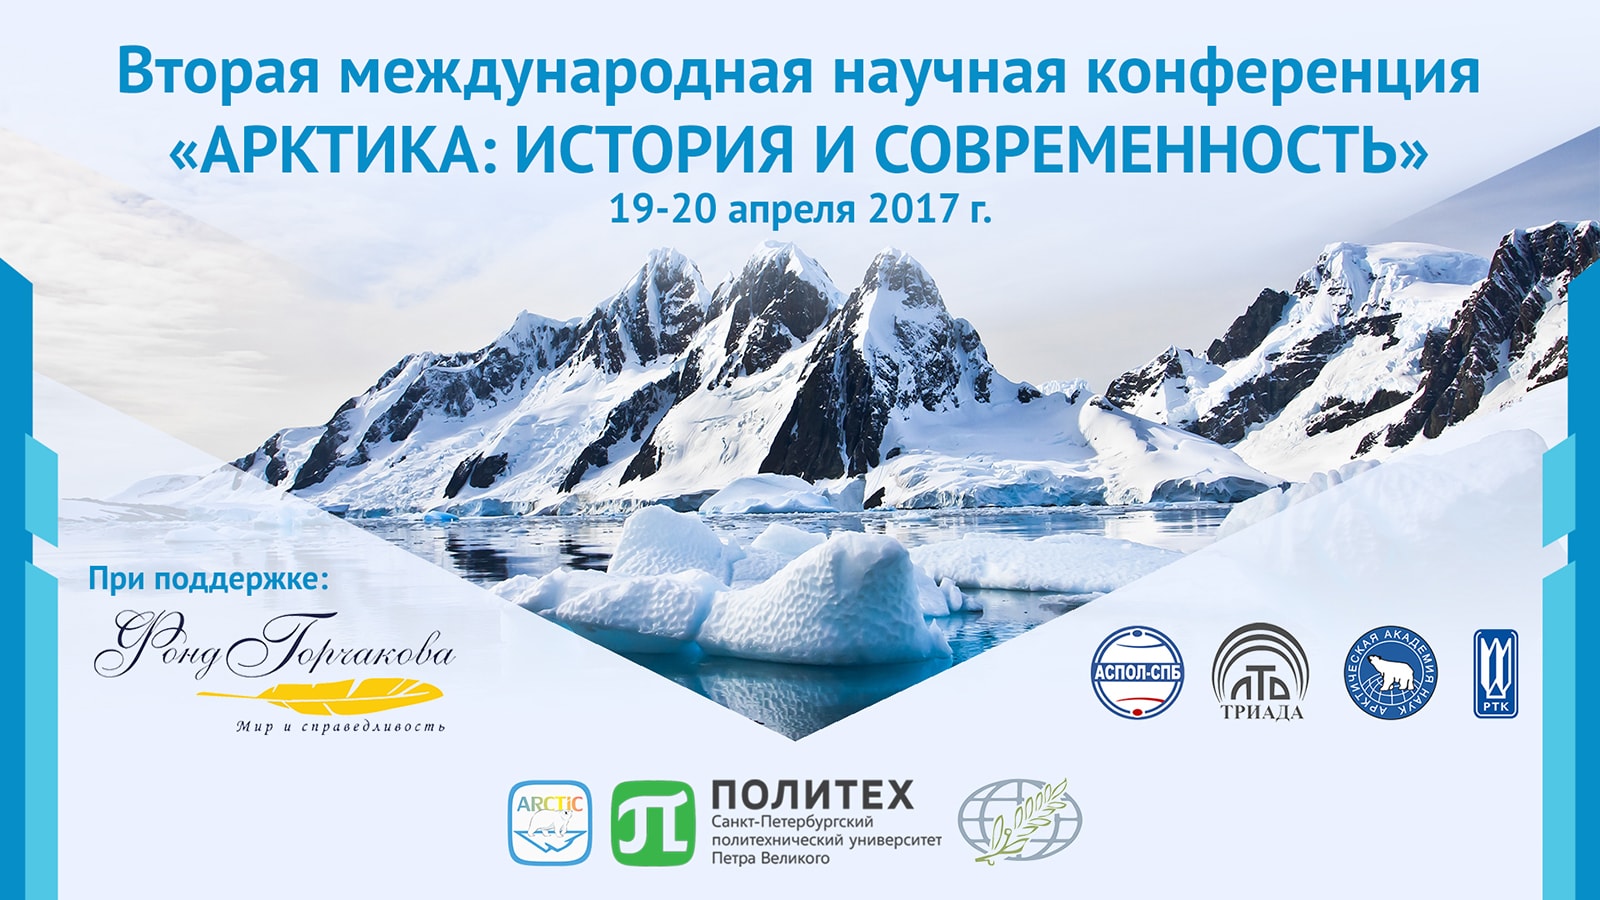 Международная научная конференция «Арктика: история и современность»